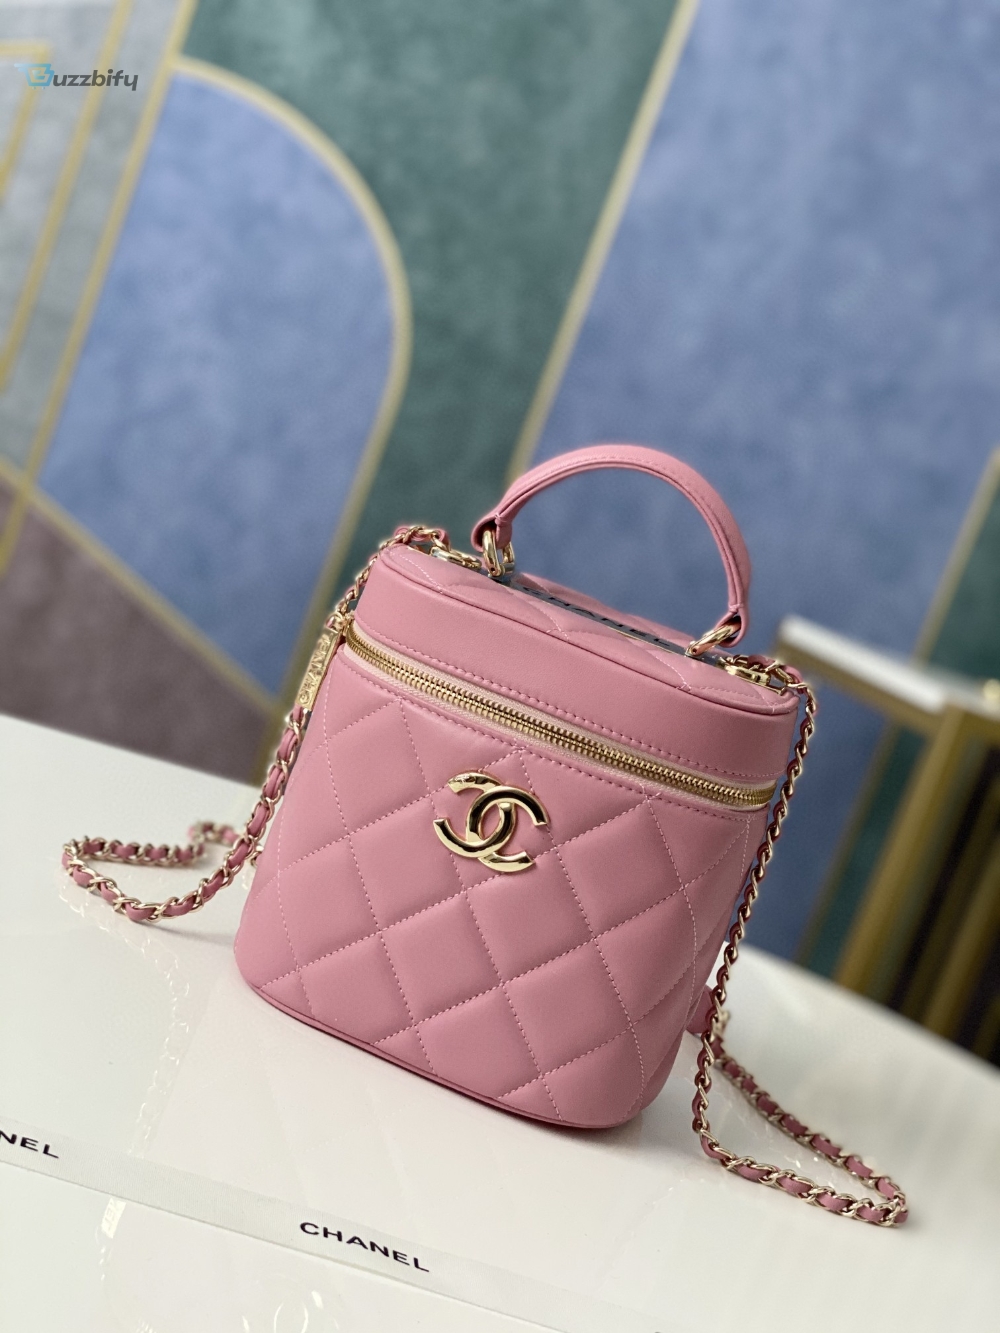 Chanel Vanity Case Gold Hardware Pink For Women, Women’s Handbags, Shoulder Bags 9.4in/24cm